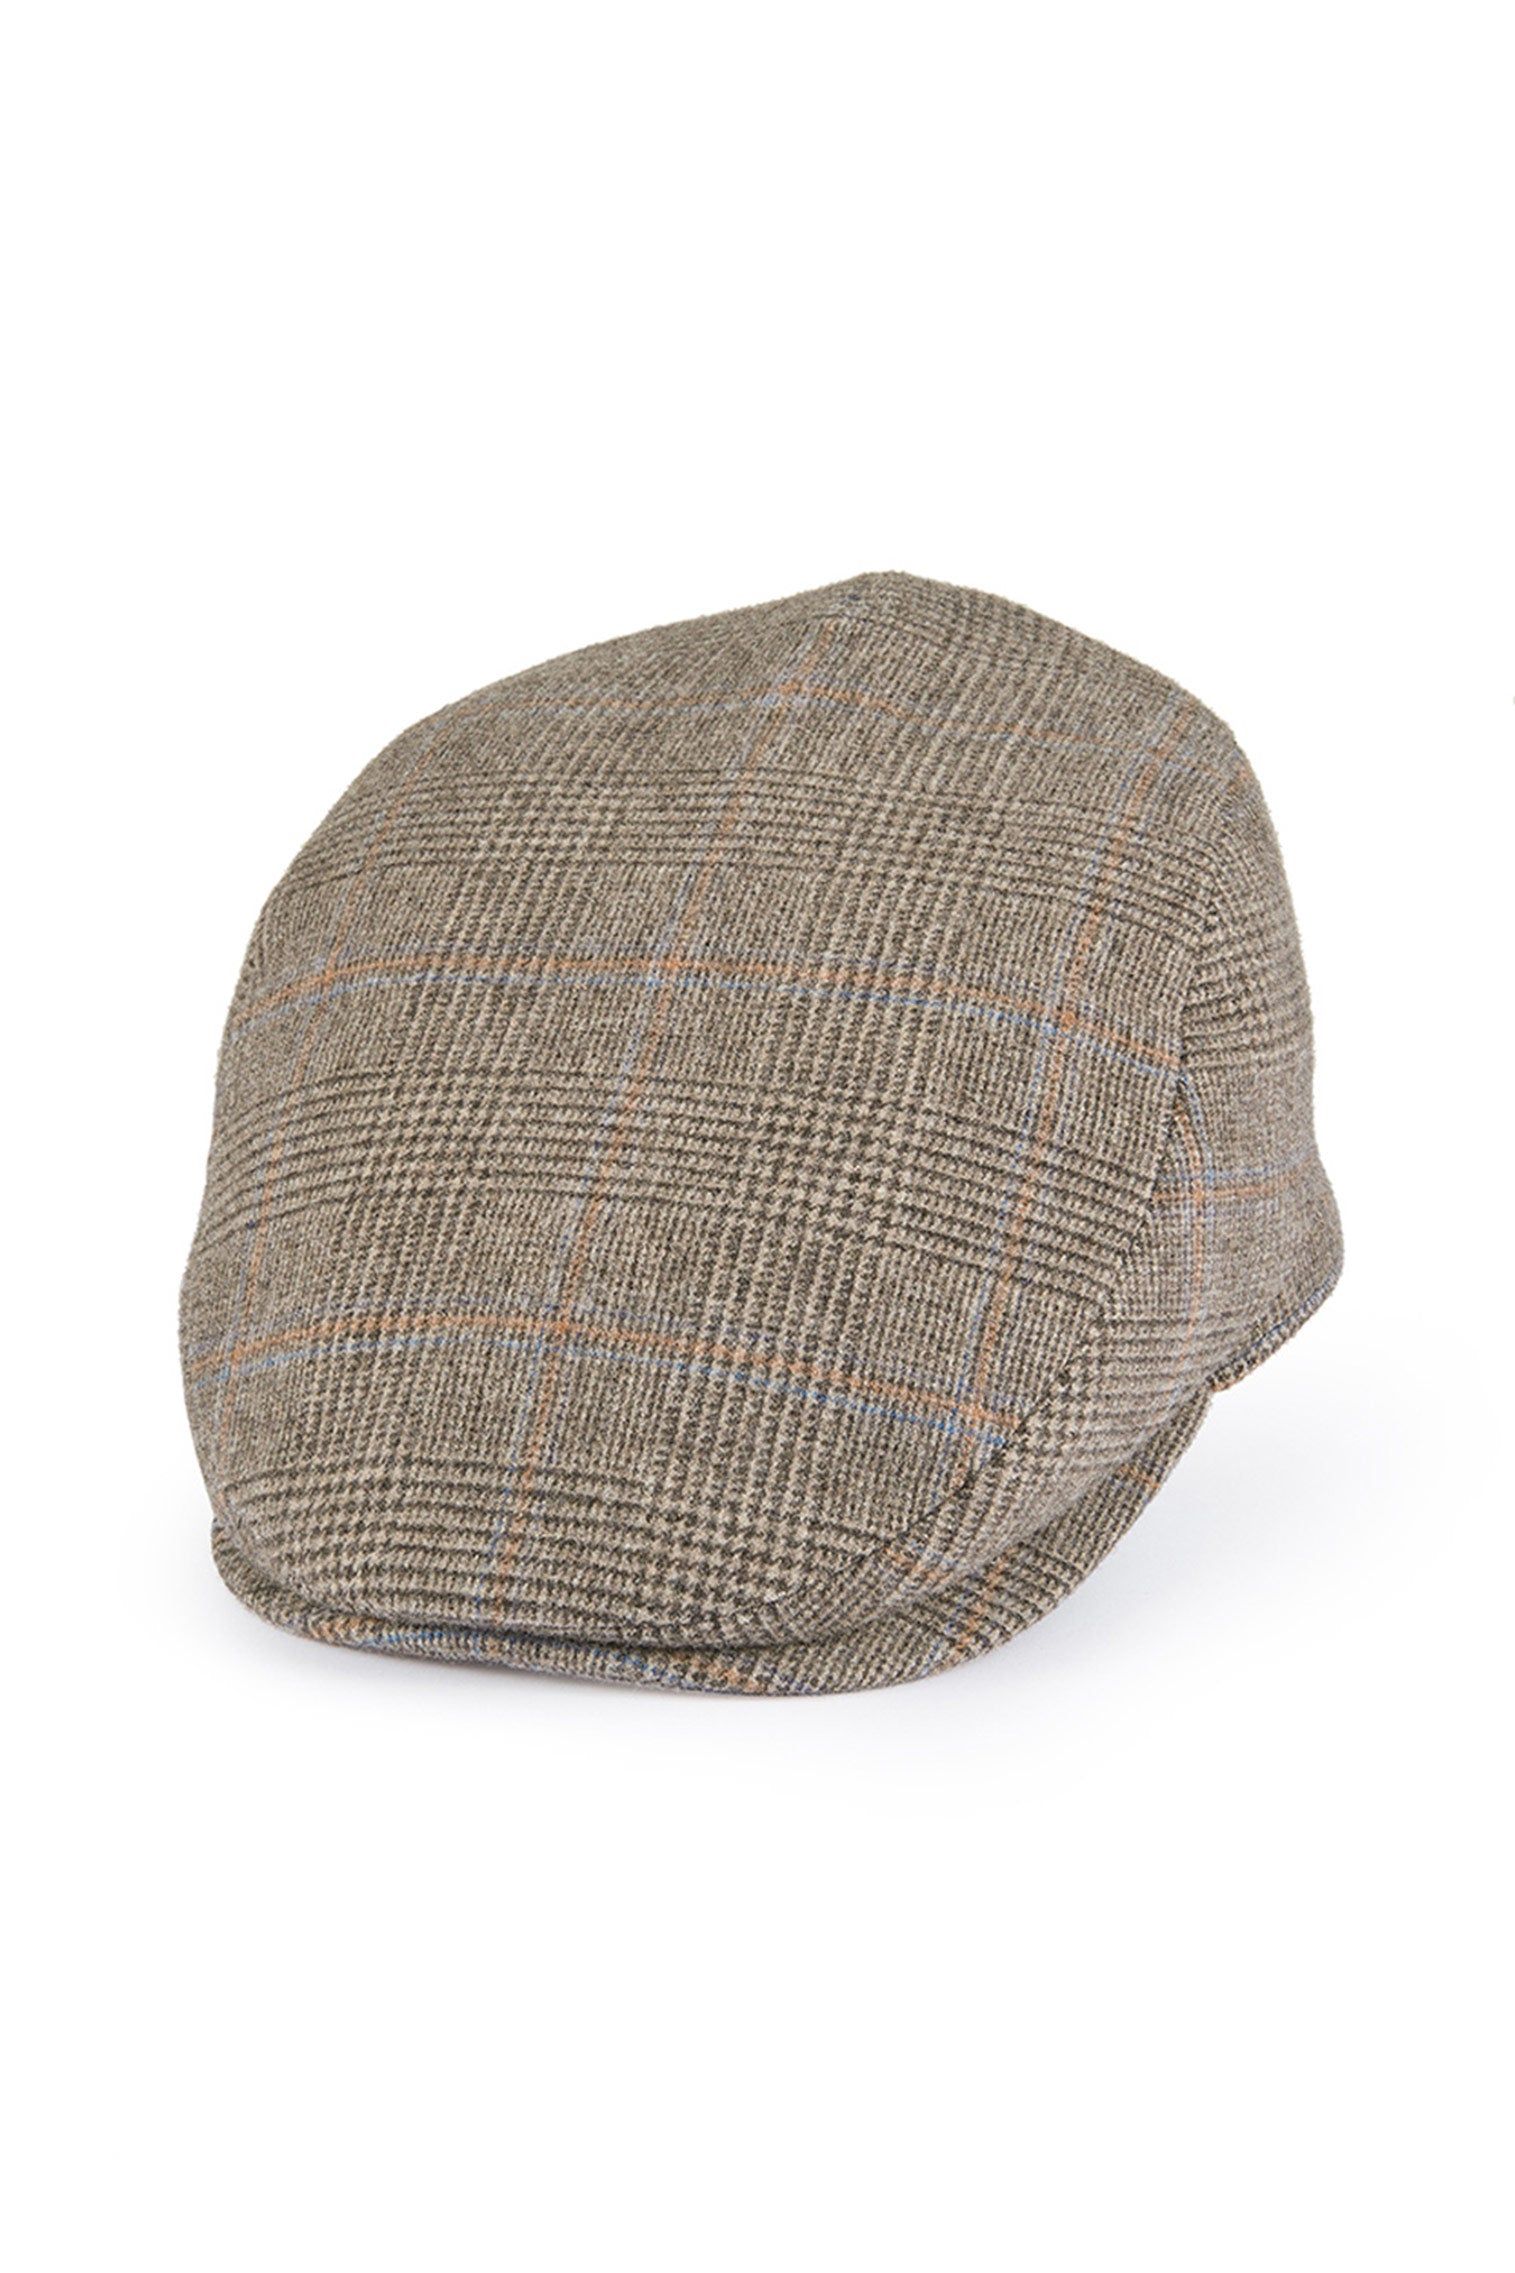 Escorial Wool Grosvenor Flat Cap - All Ready to Wear - Lock & Co. Hatters London UK